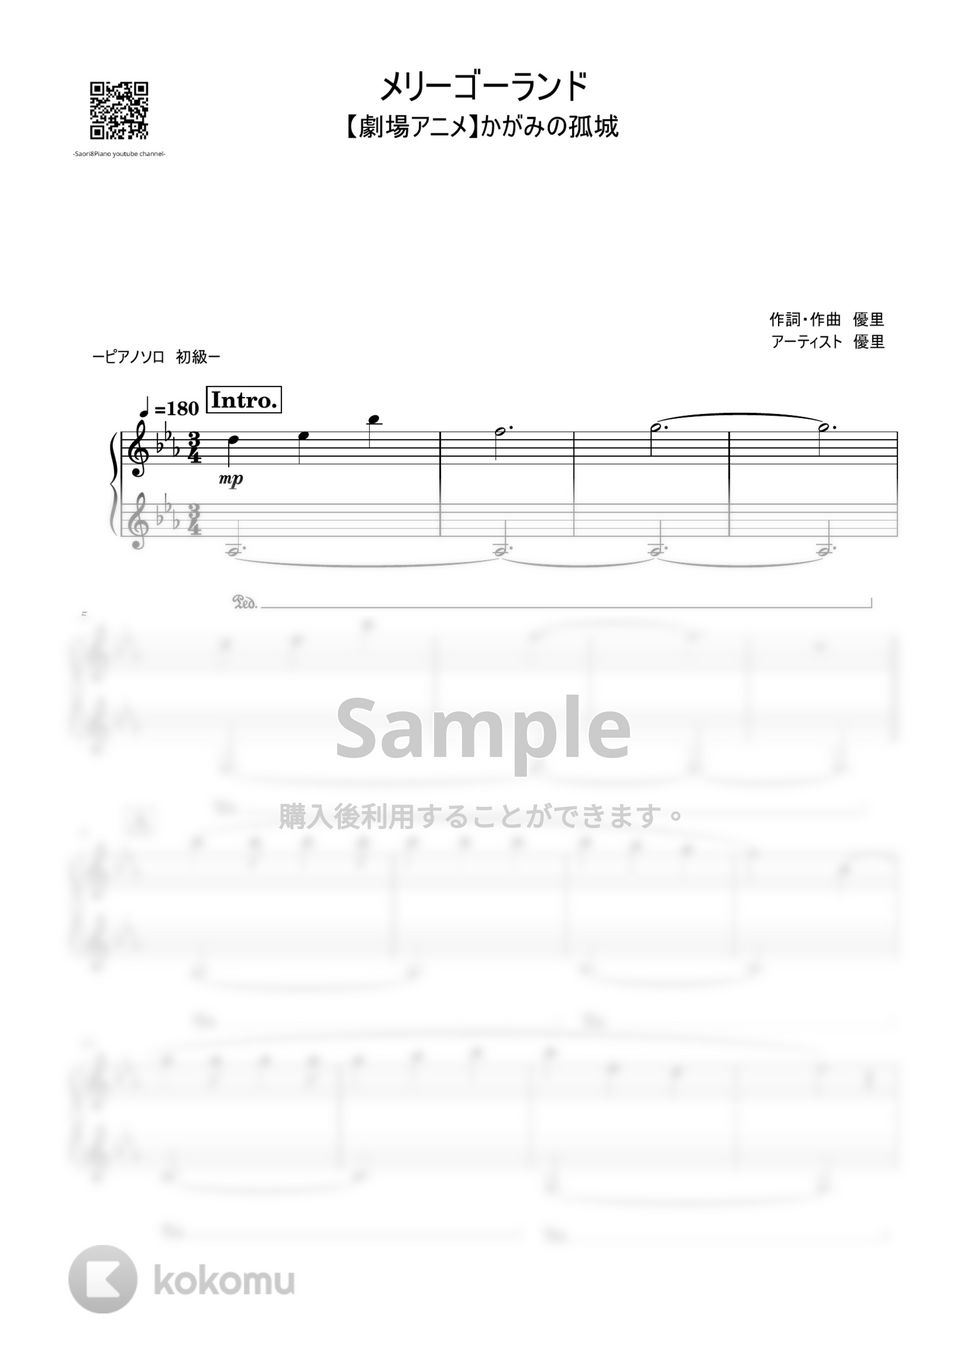 優里 - メリーゴーランド (かがみの狐城/初級レベル) by Saori8Piano